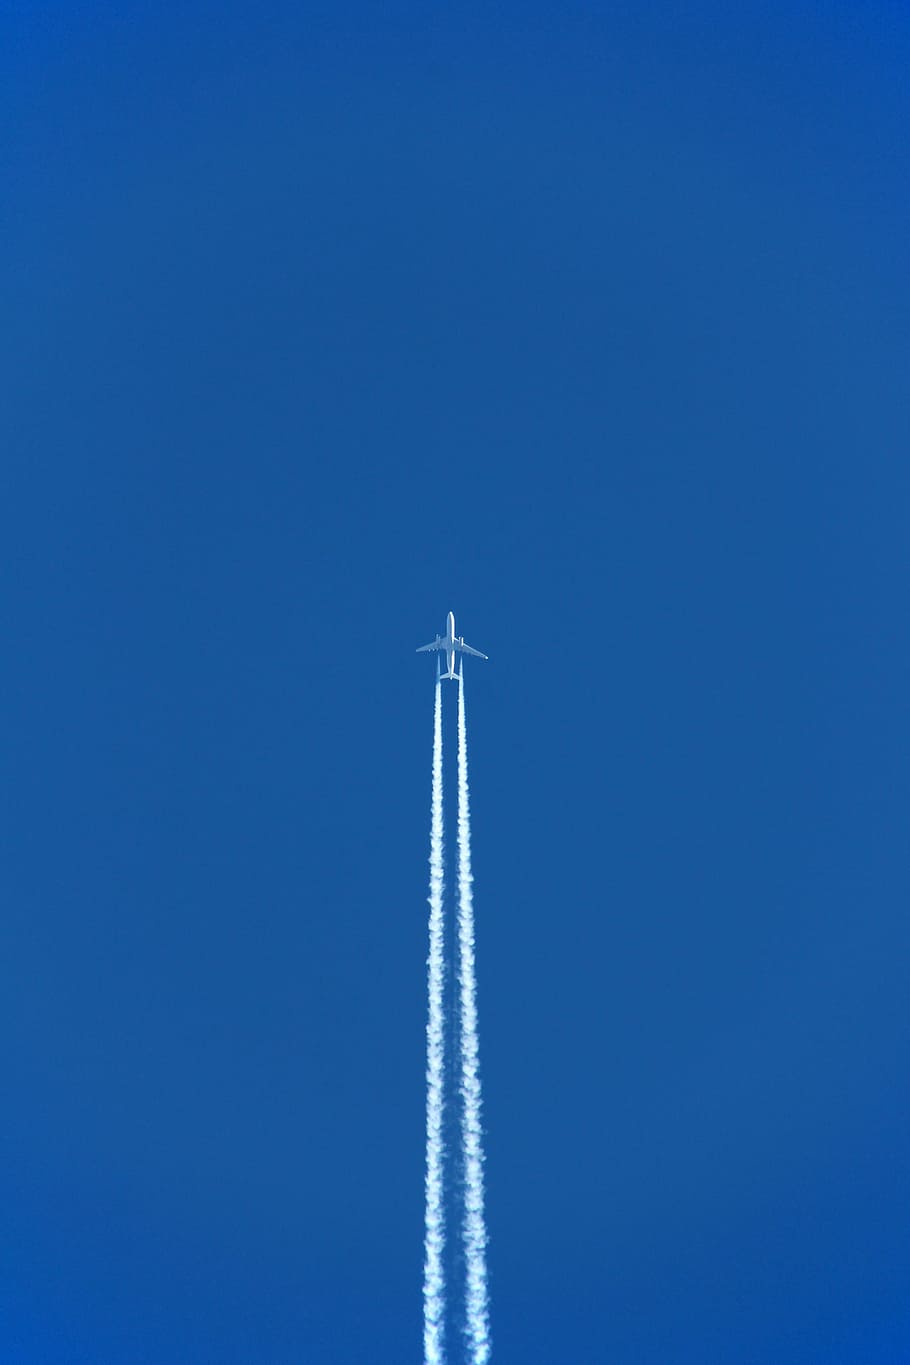 putih, pesawat jet, biru, langit, siang hari, pesawat, kebisingan pesawat, contrail, penerbangan, liburan